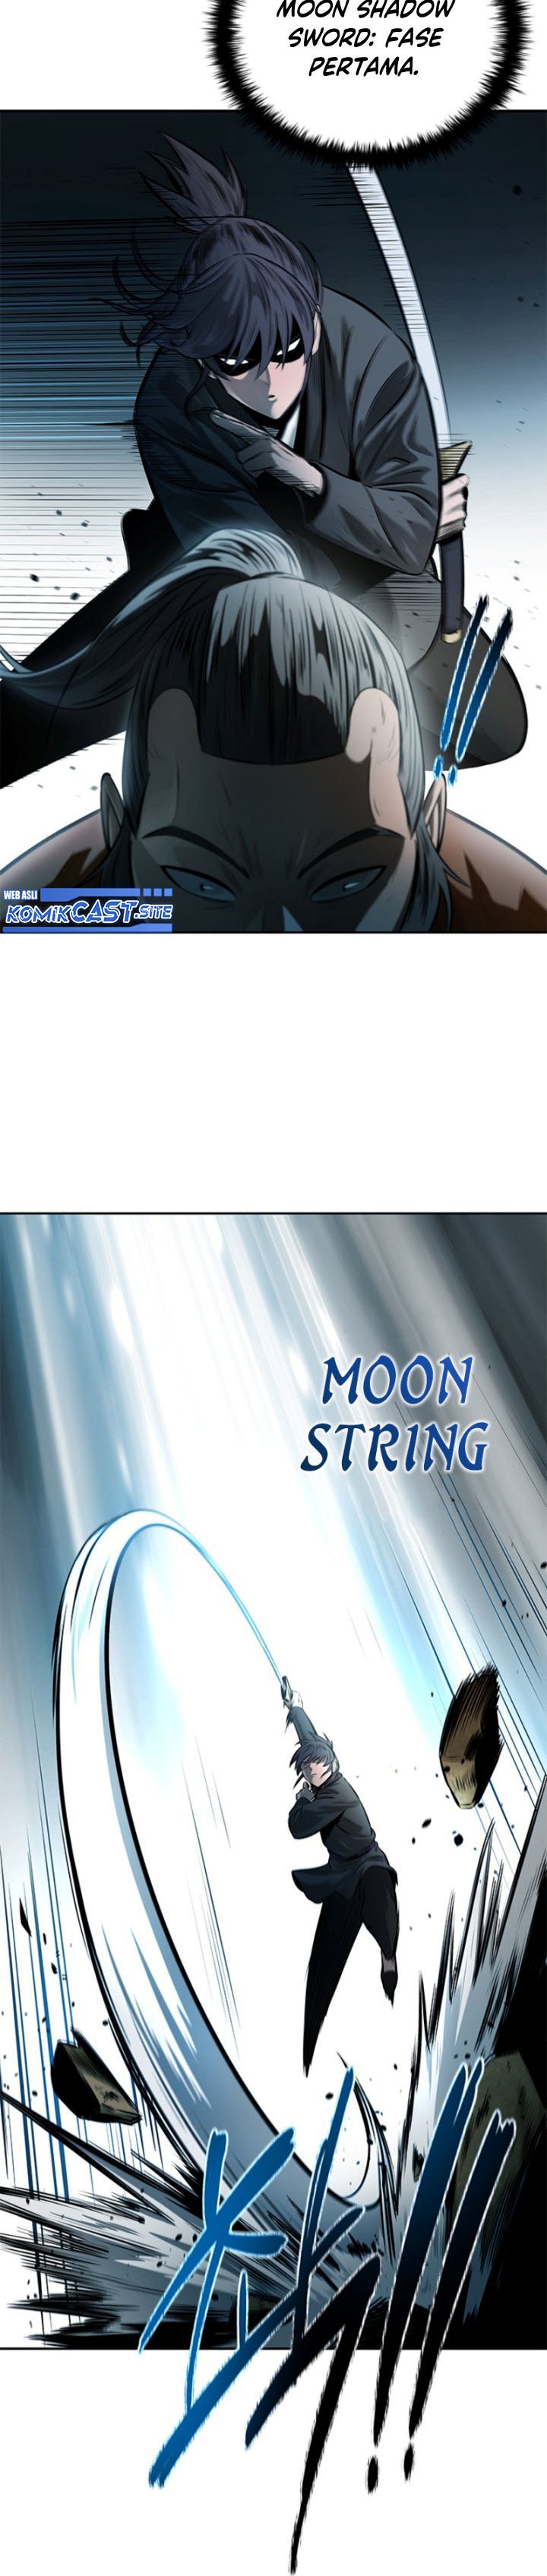 Moon-Shadow Sword Emperor Chapter 07 - 301